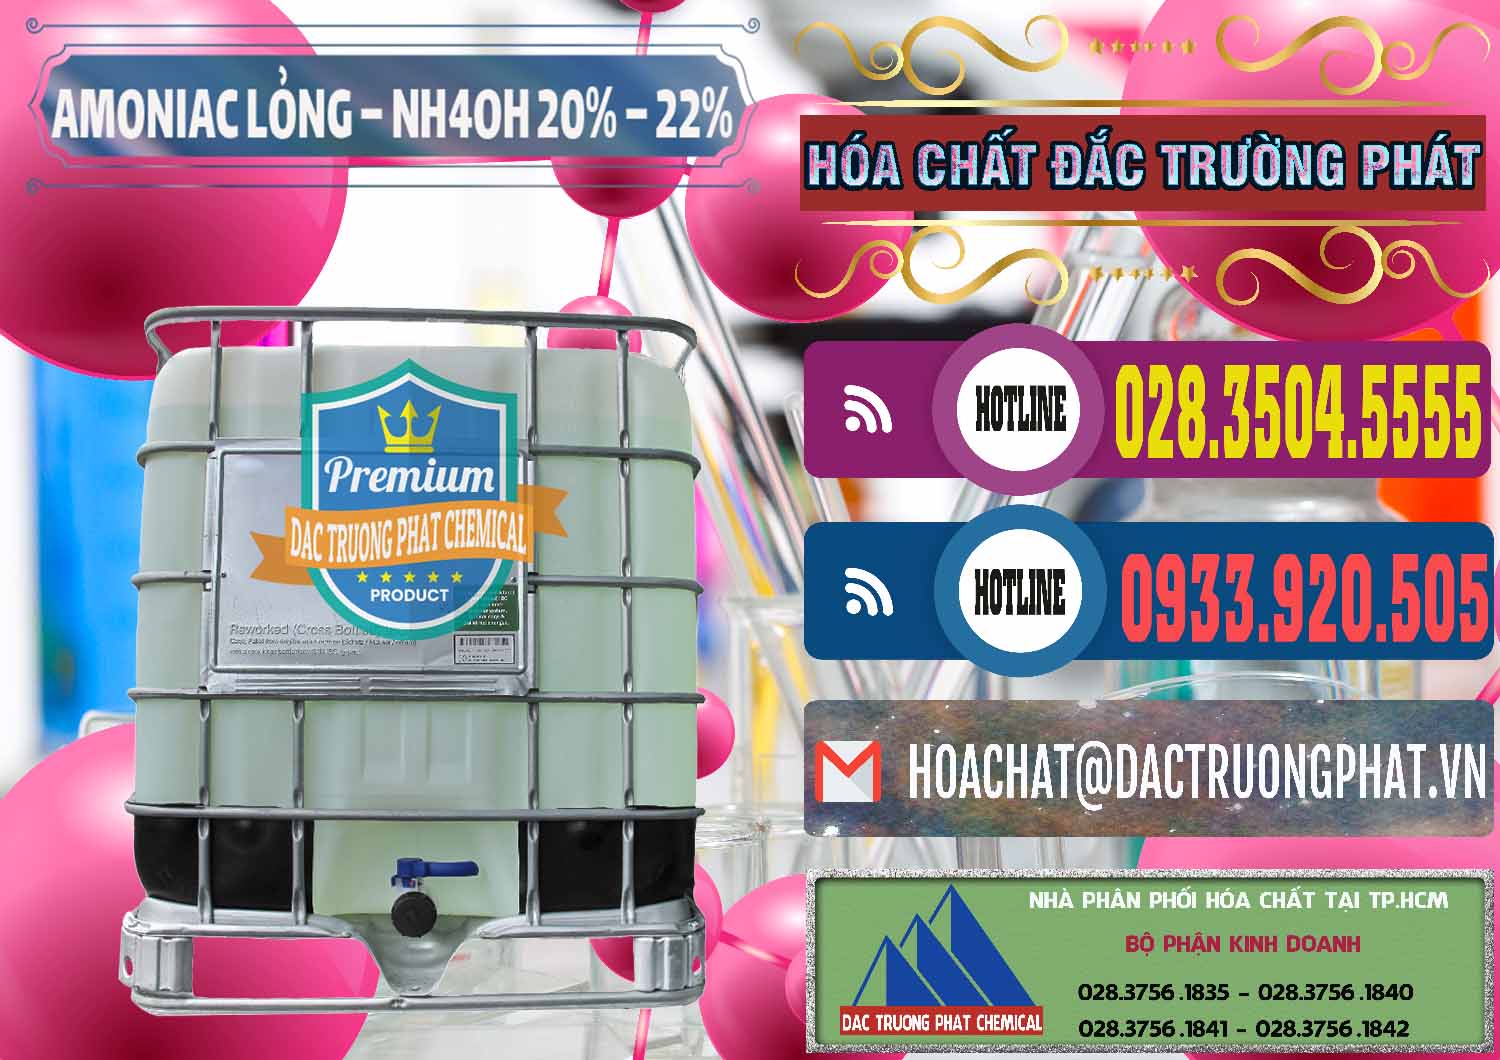 Cty chuyên bán & cung cấp Amoniac Lỏng – NH4OH 20% – 22% Việt Nam - 0185 - Công ty chuyên cung cấp & bán hóa chất tại TP.HCM - muabanhoachat.com.vn